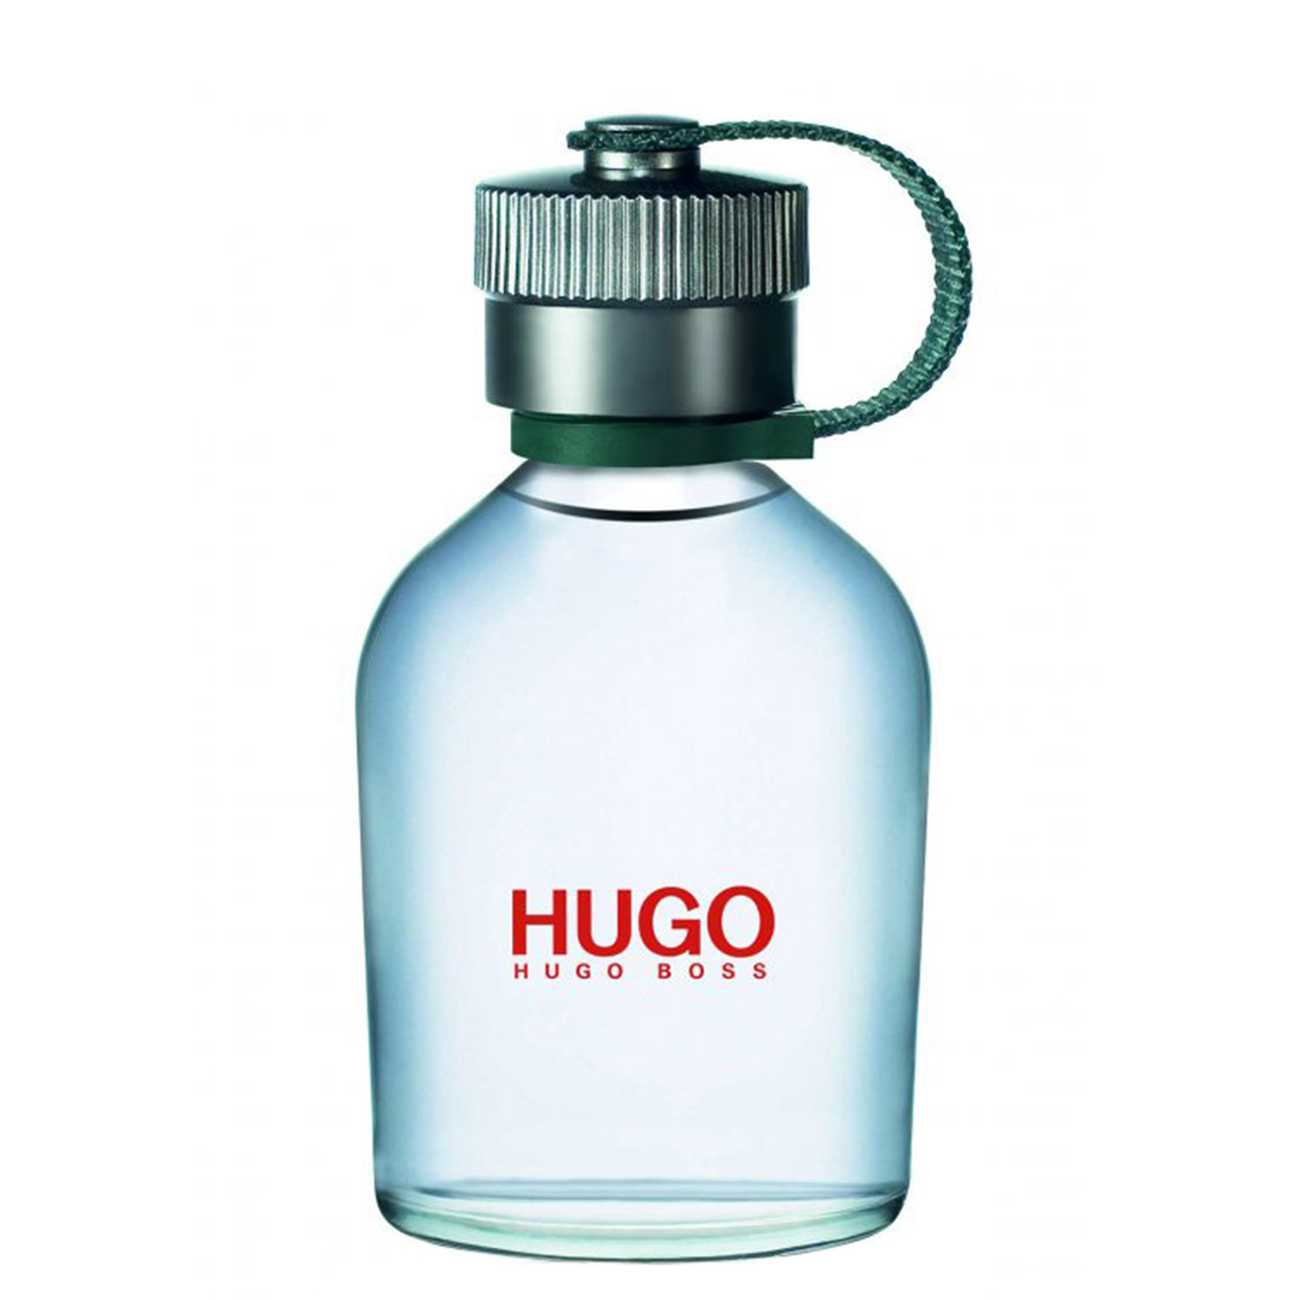 Apa de Toaleta Hugo Boss HUGO 75ml cu comanda online